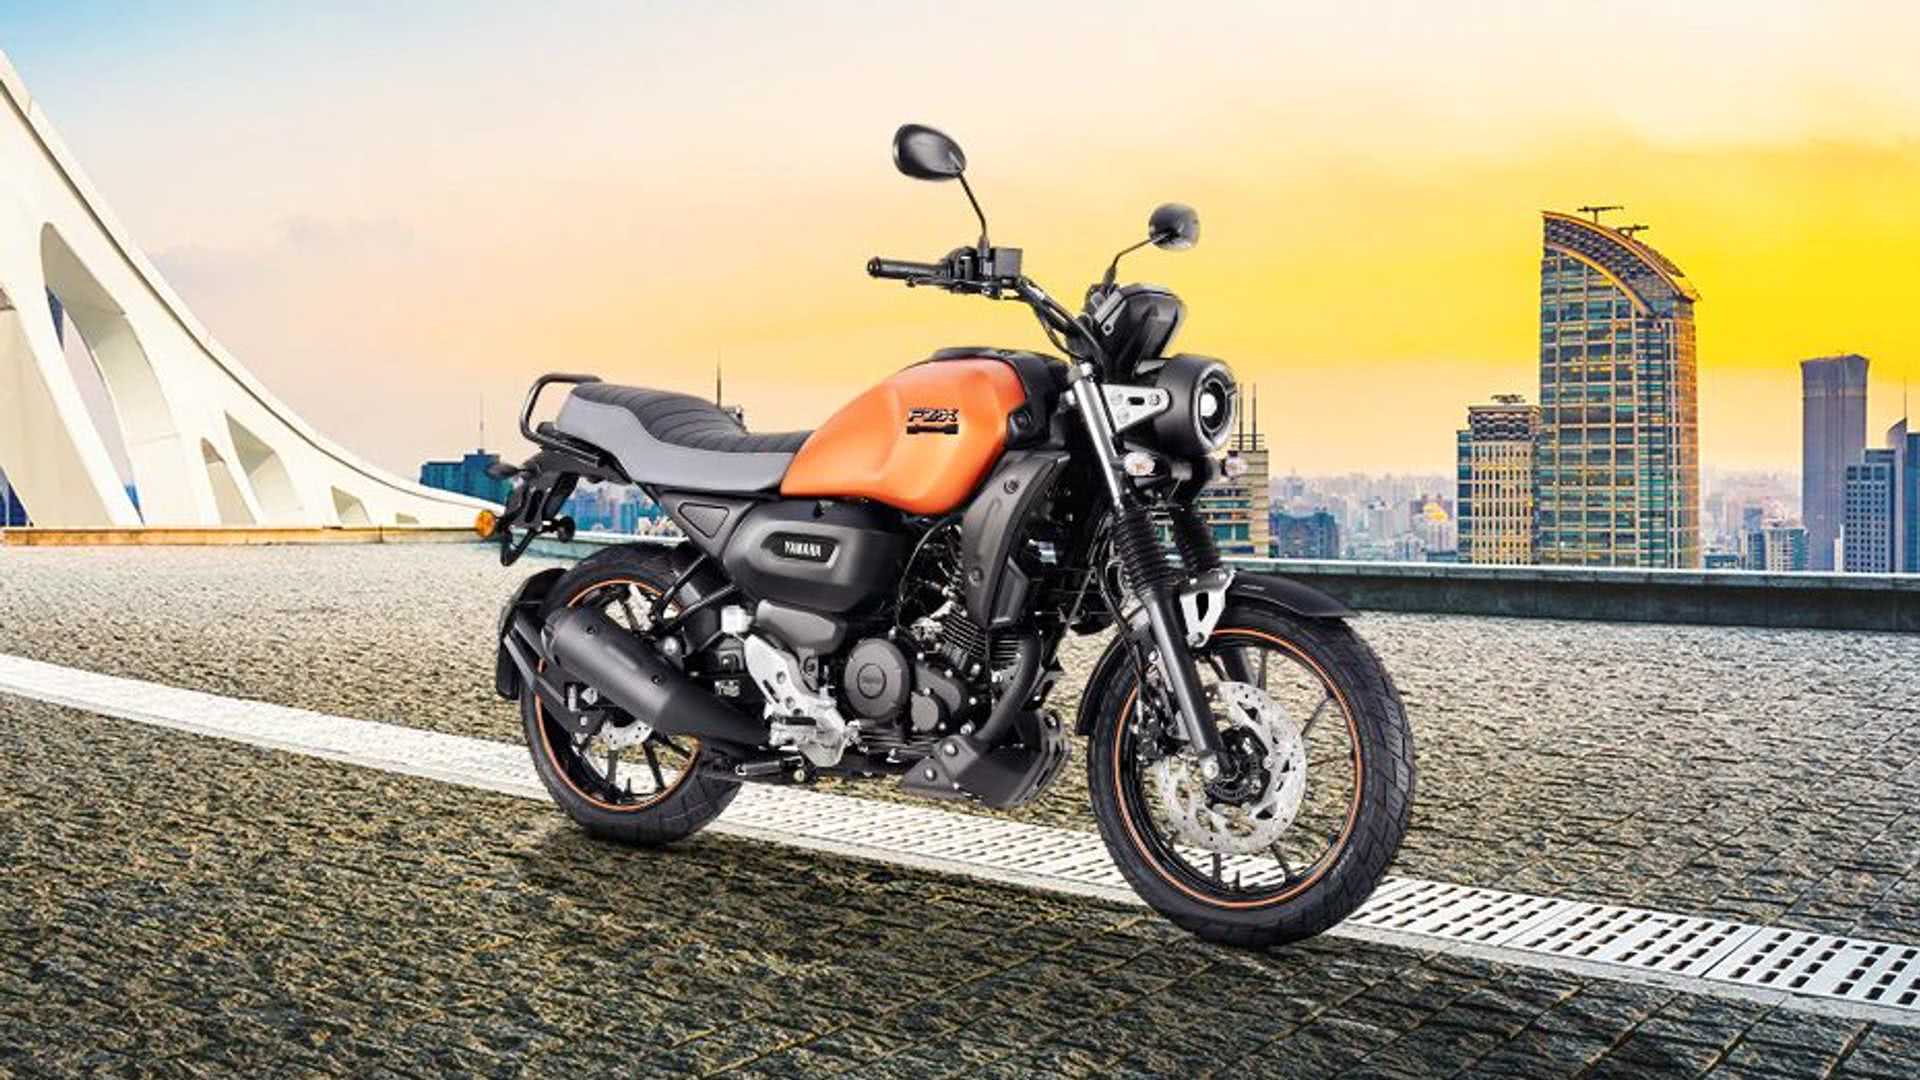 Yamaha FZ-X FI edição Índia é lançada com valor reduzido; confira novo valor